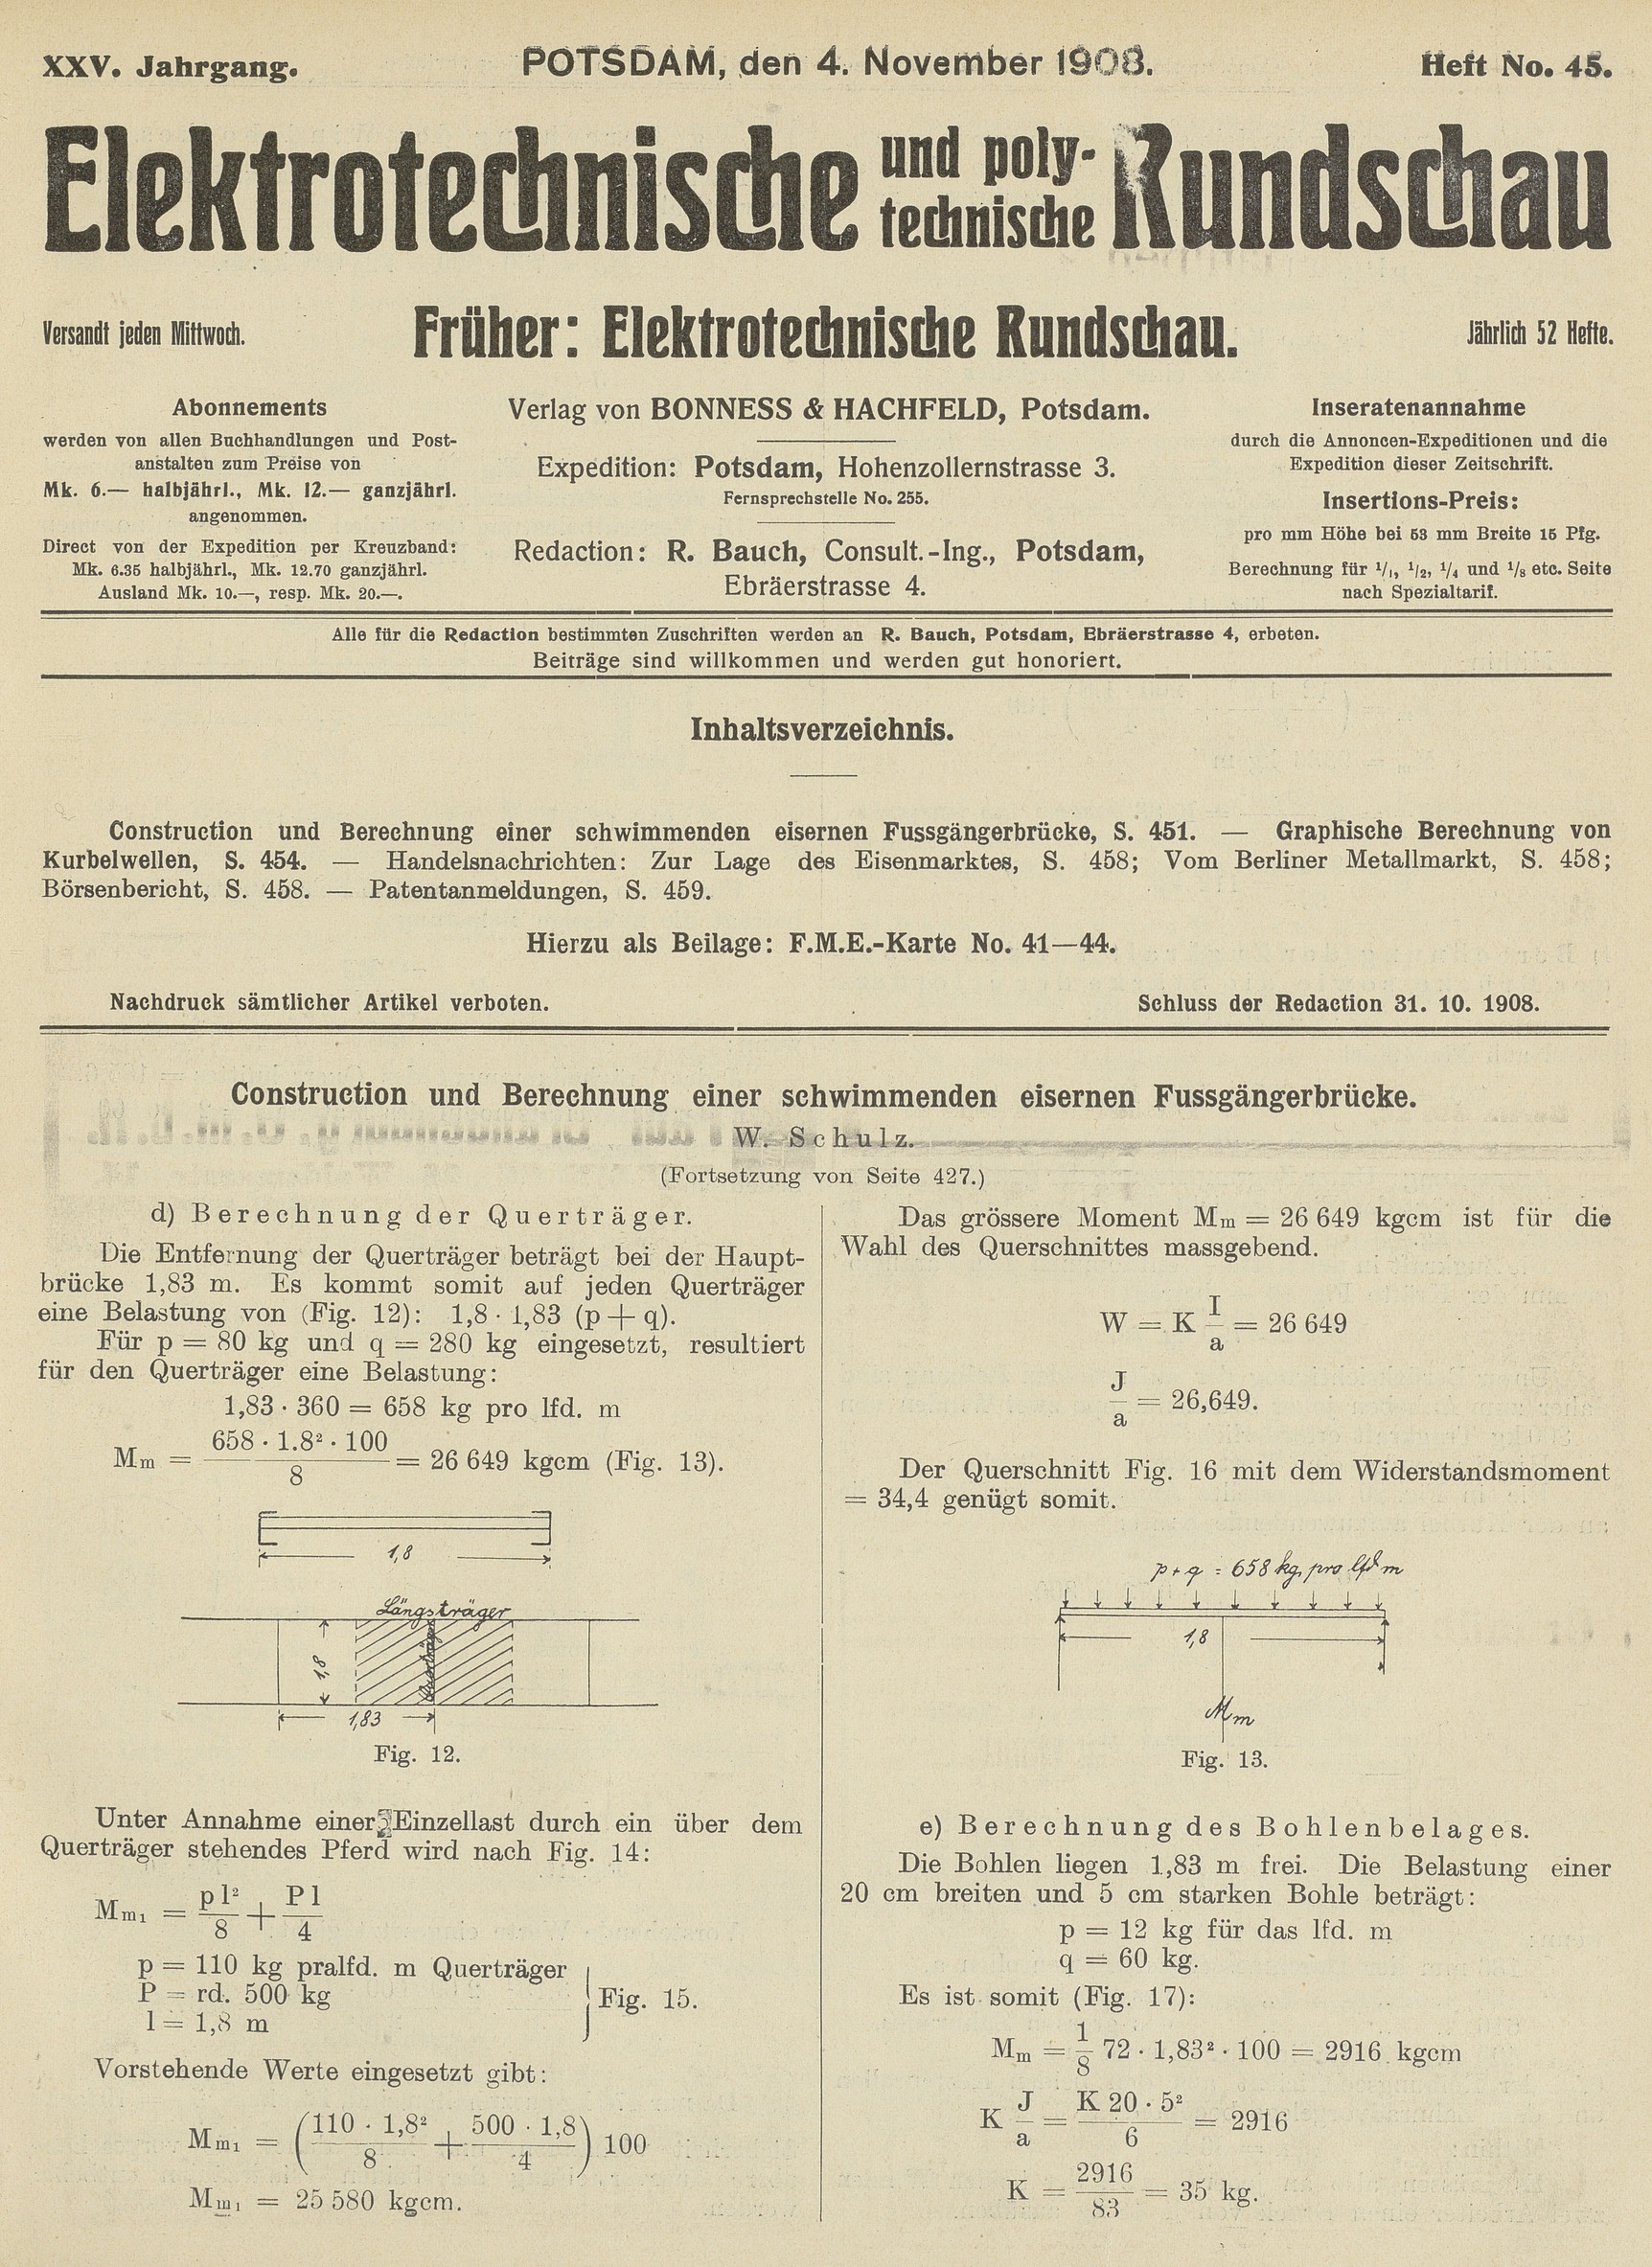 Elektrotechnische und polytechnische Rundschau, XXV. Jahrgang, Heft No. 45